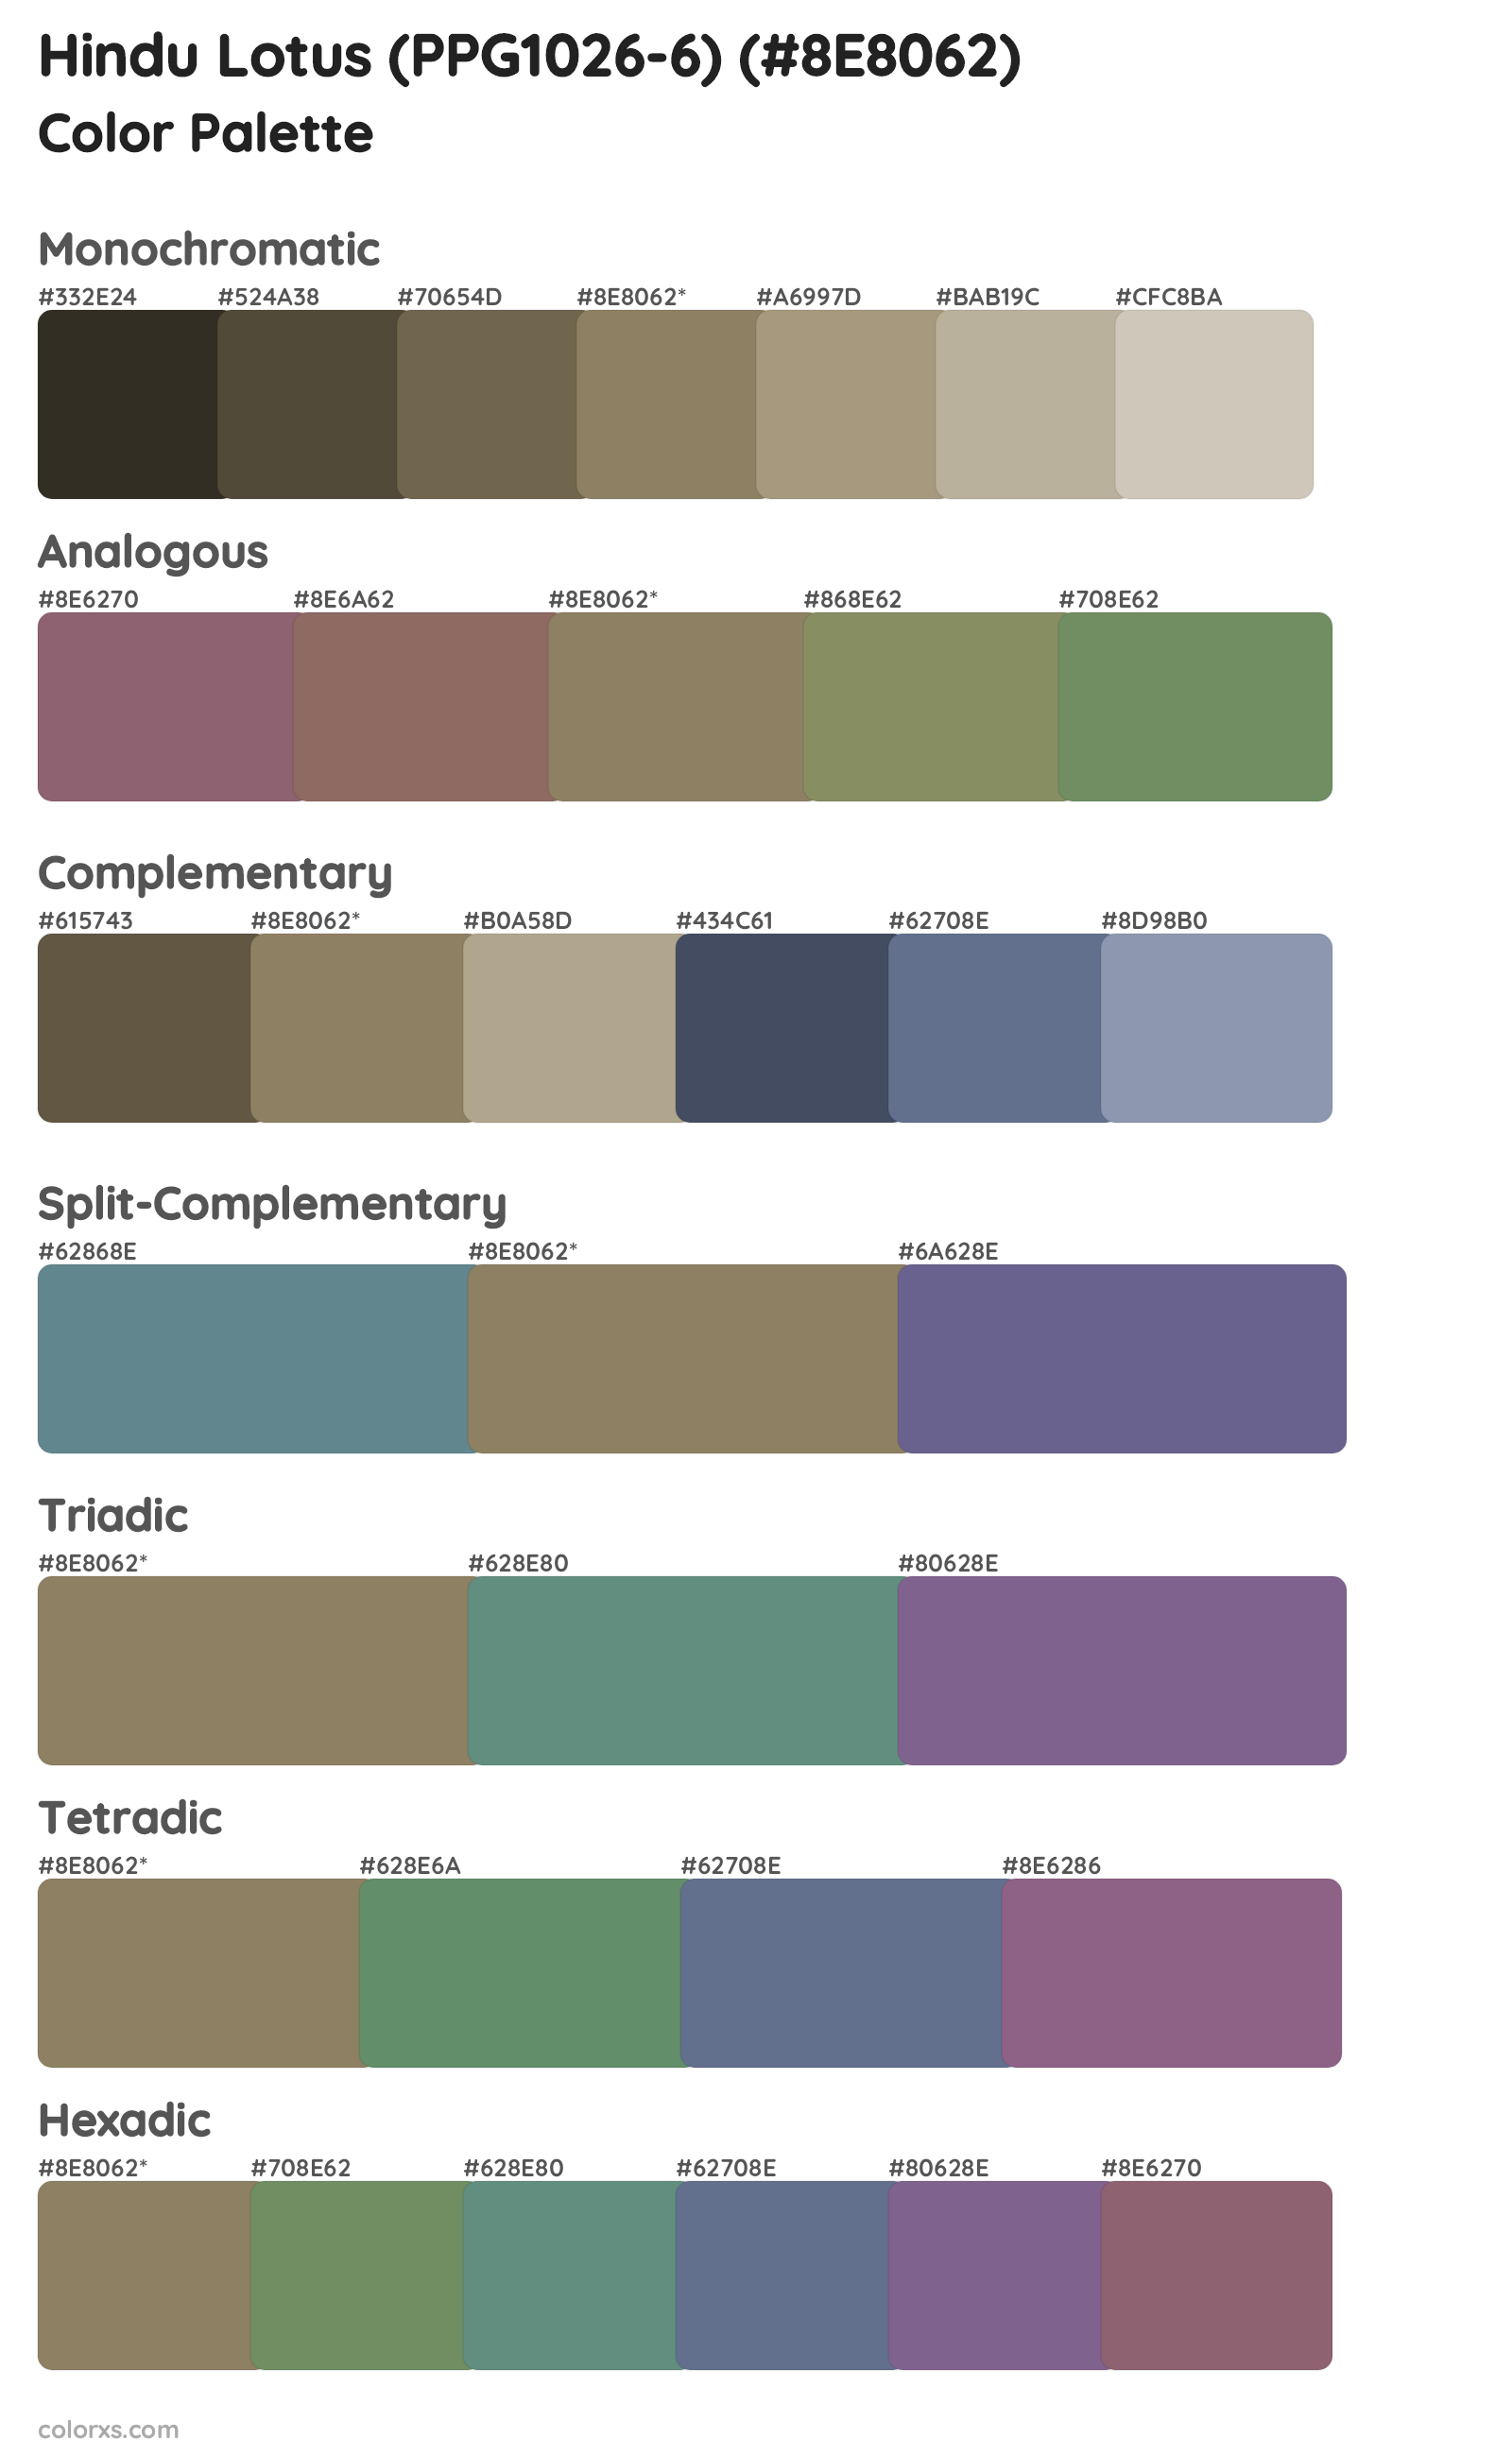 Hindu Lotus (PPG1026-6) Color Scheme Palettes